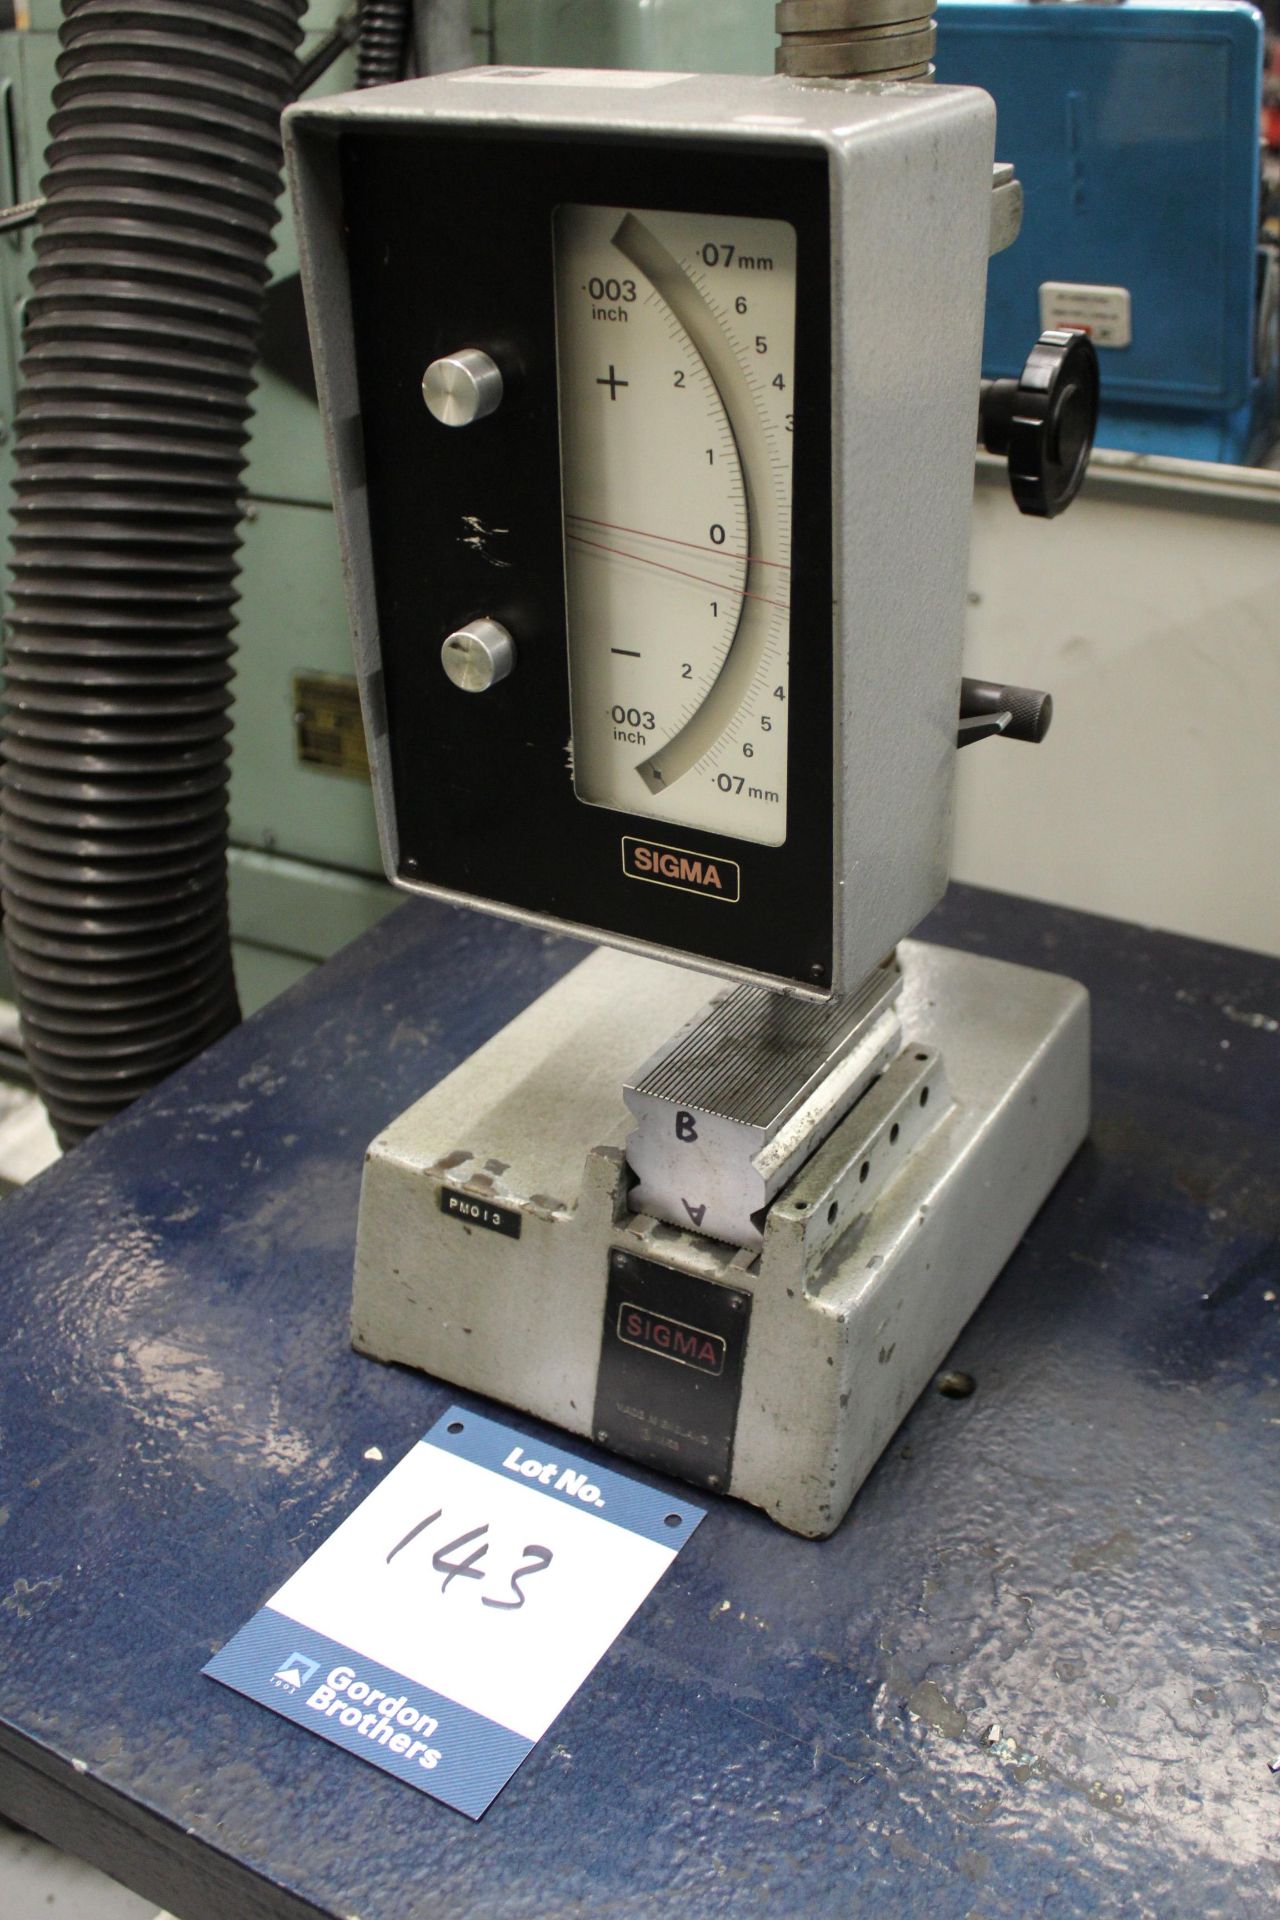 Sigma 201-13 mechanical comparator, Serial No. 51951